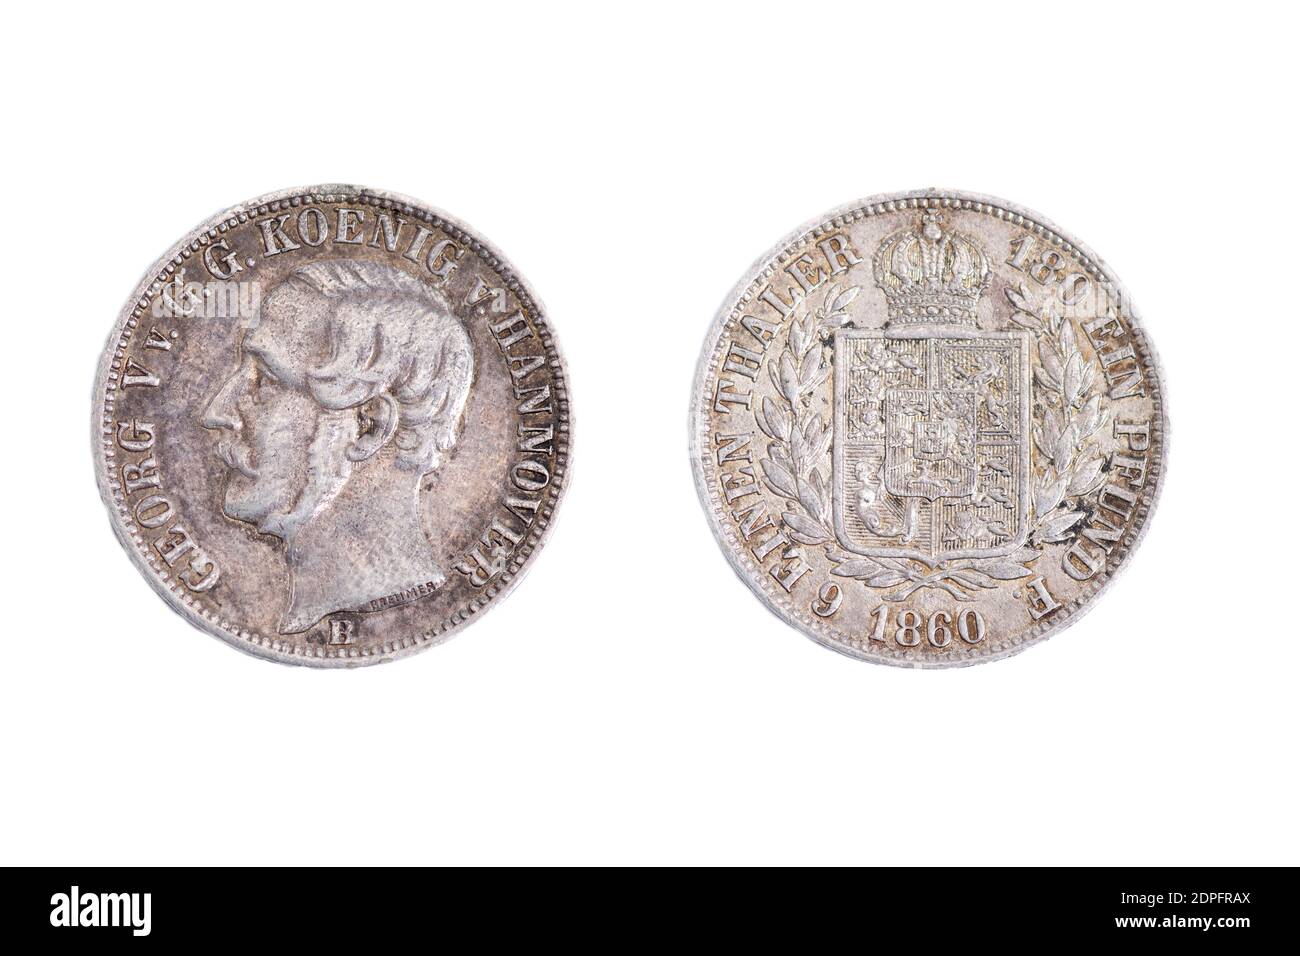 Alte alte alte Vintage-Münzen Geld König Georg der V Von Hannover Hannover Deutschland Deutsch 1860 Silber Taler Stockfoto